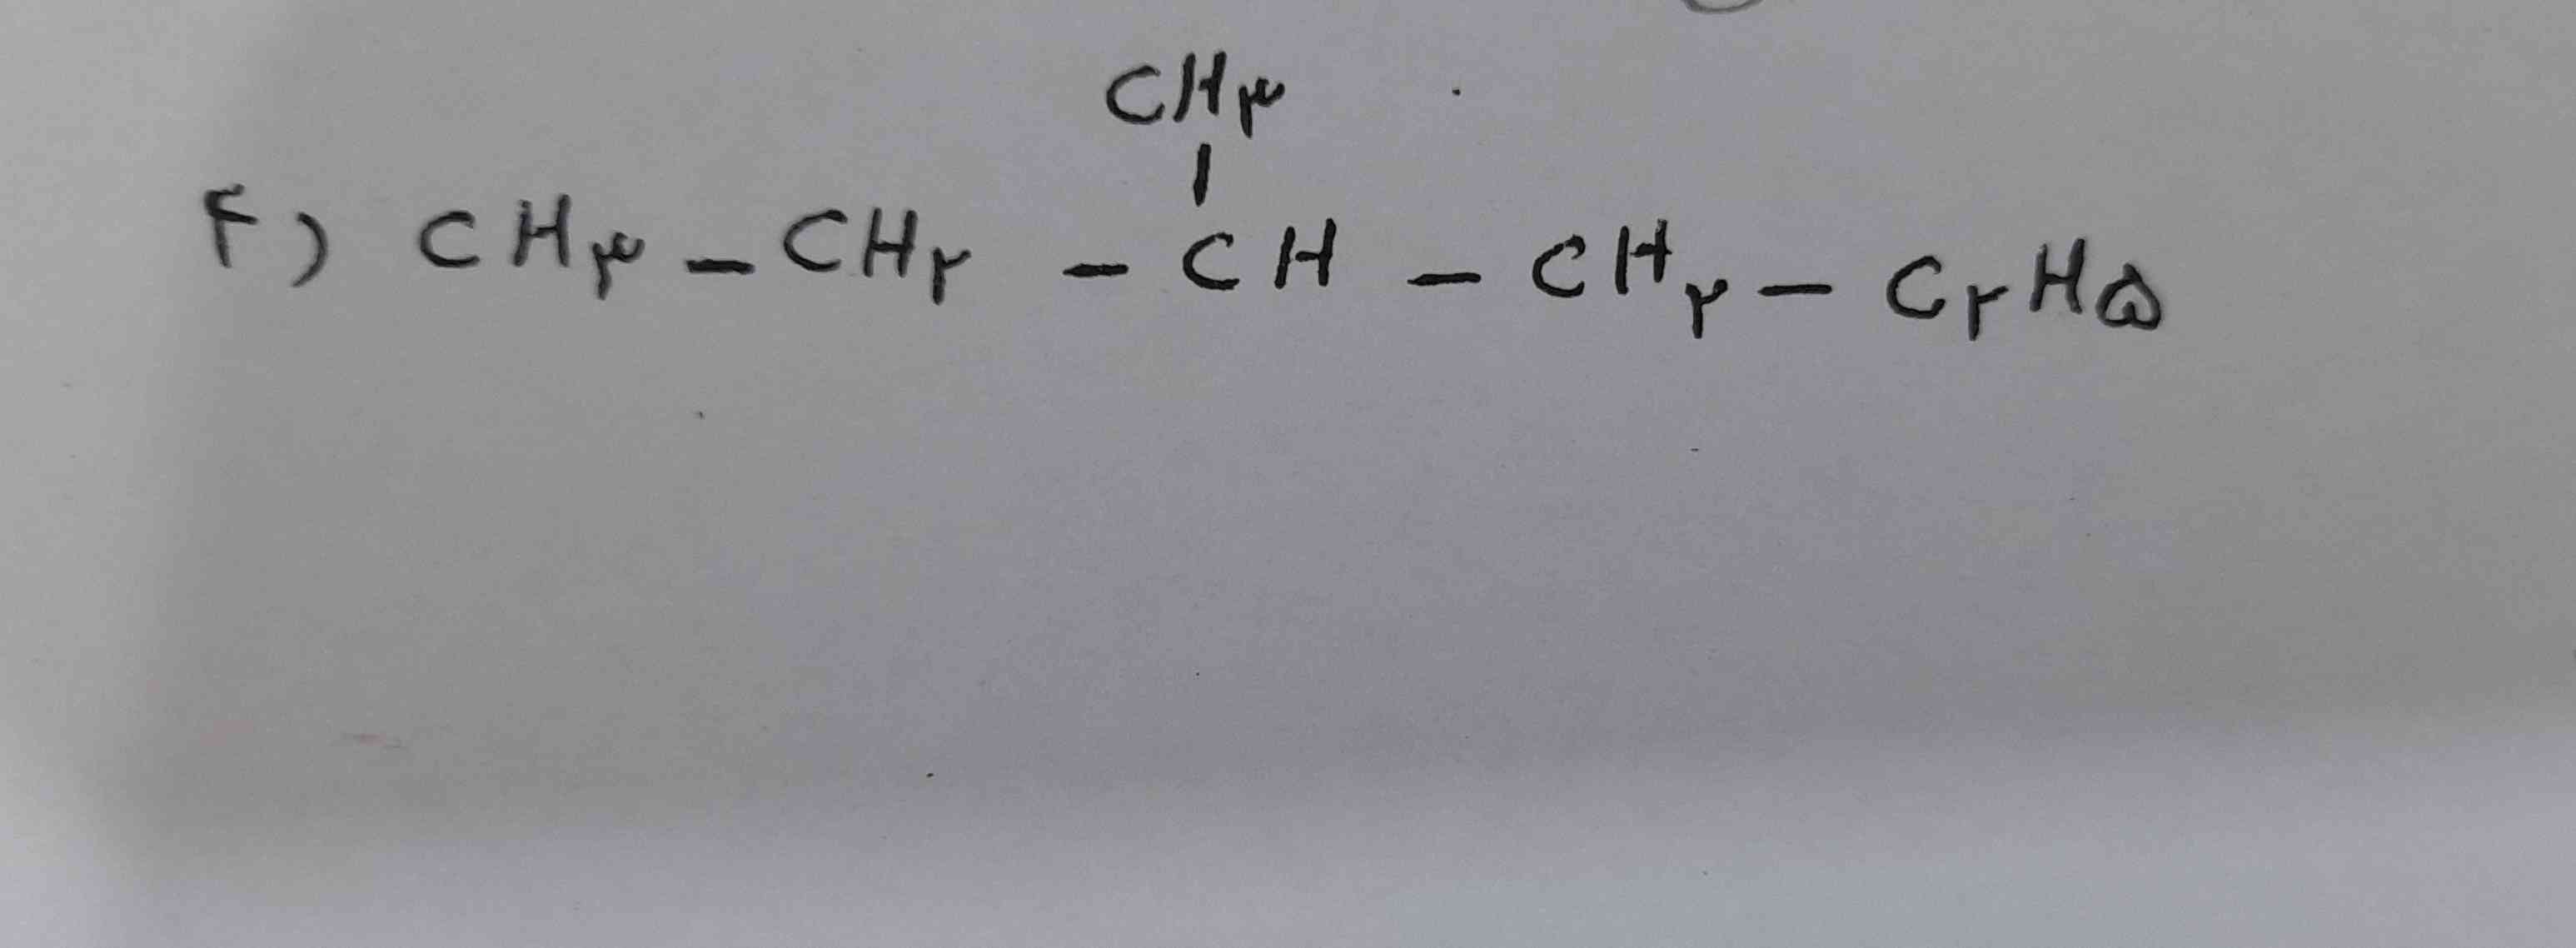 اسم این هیدروکربن رو چطوری باید نوشت ؟